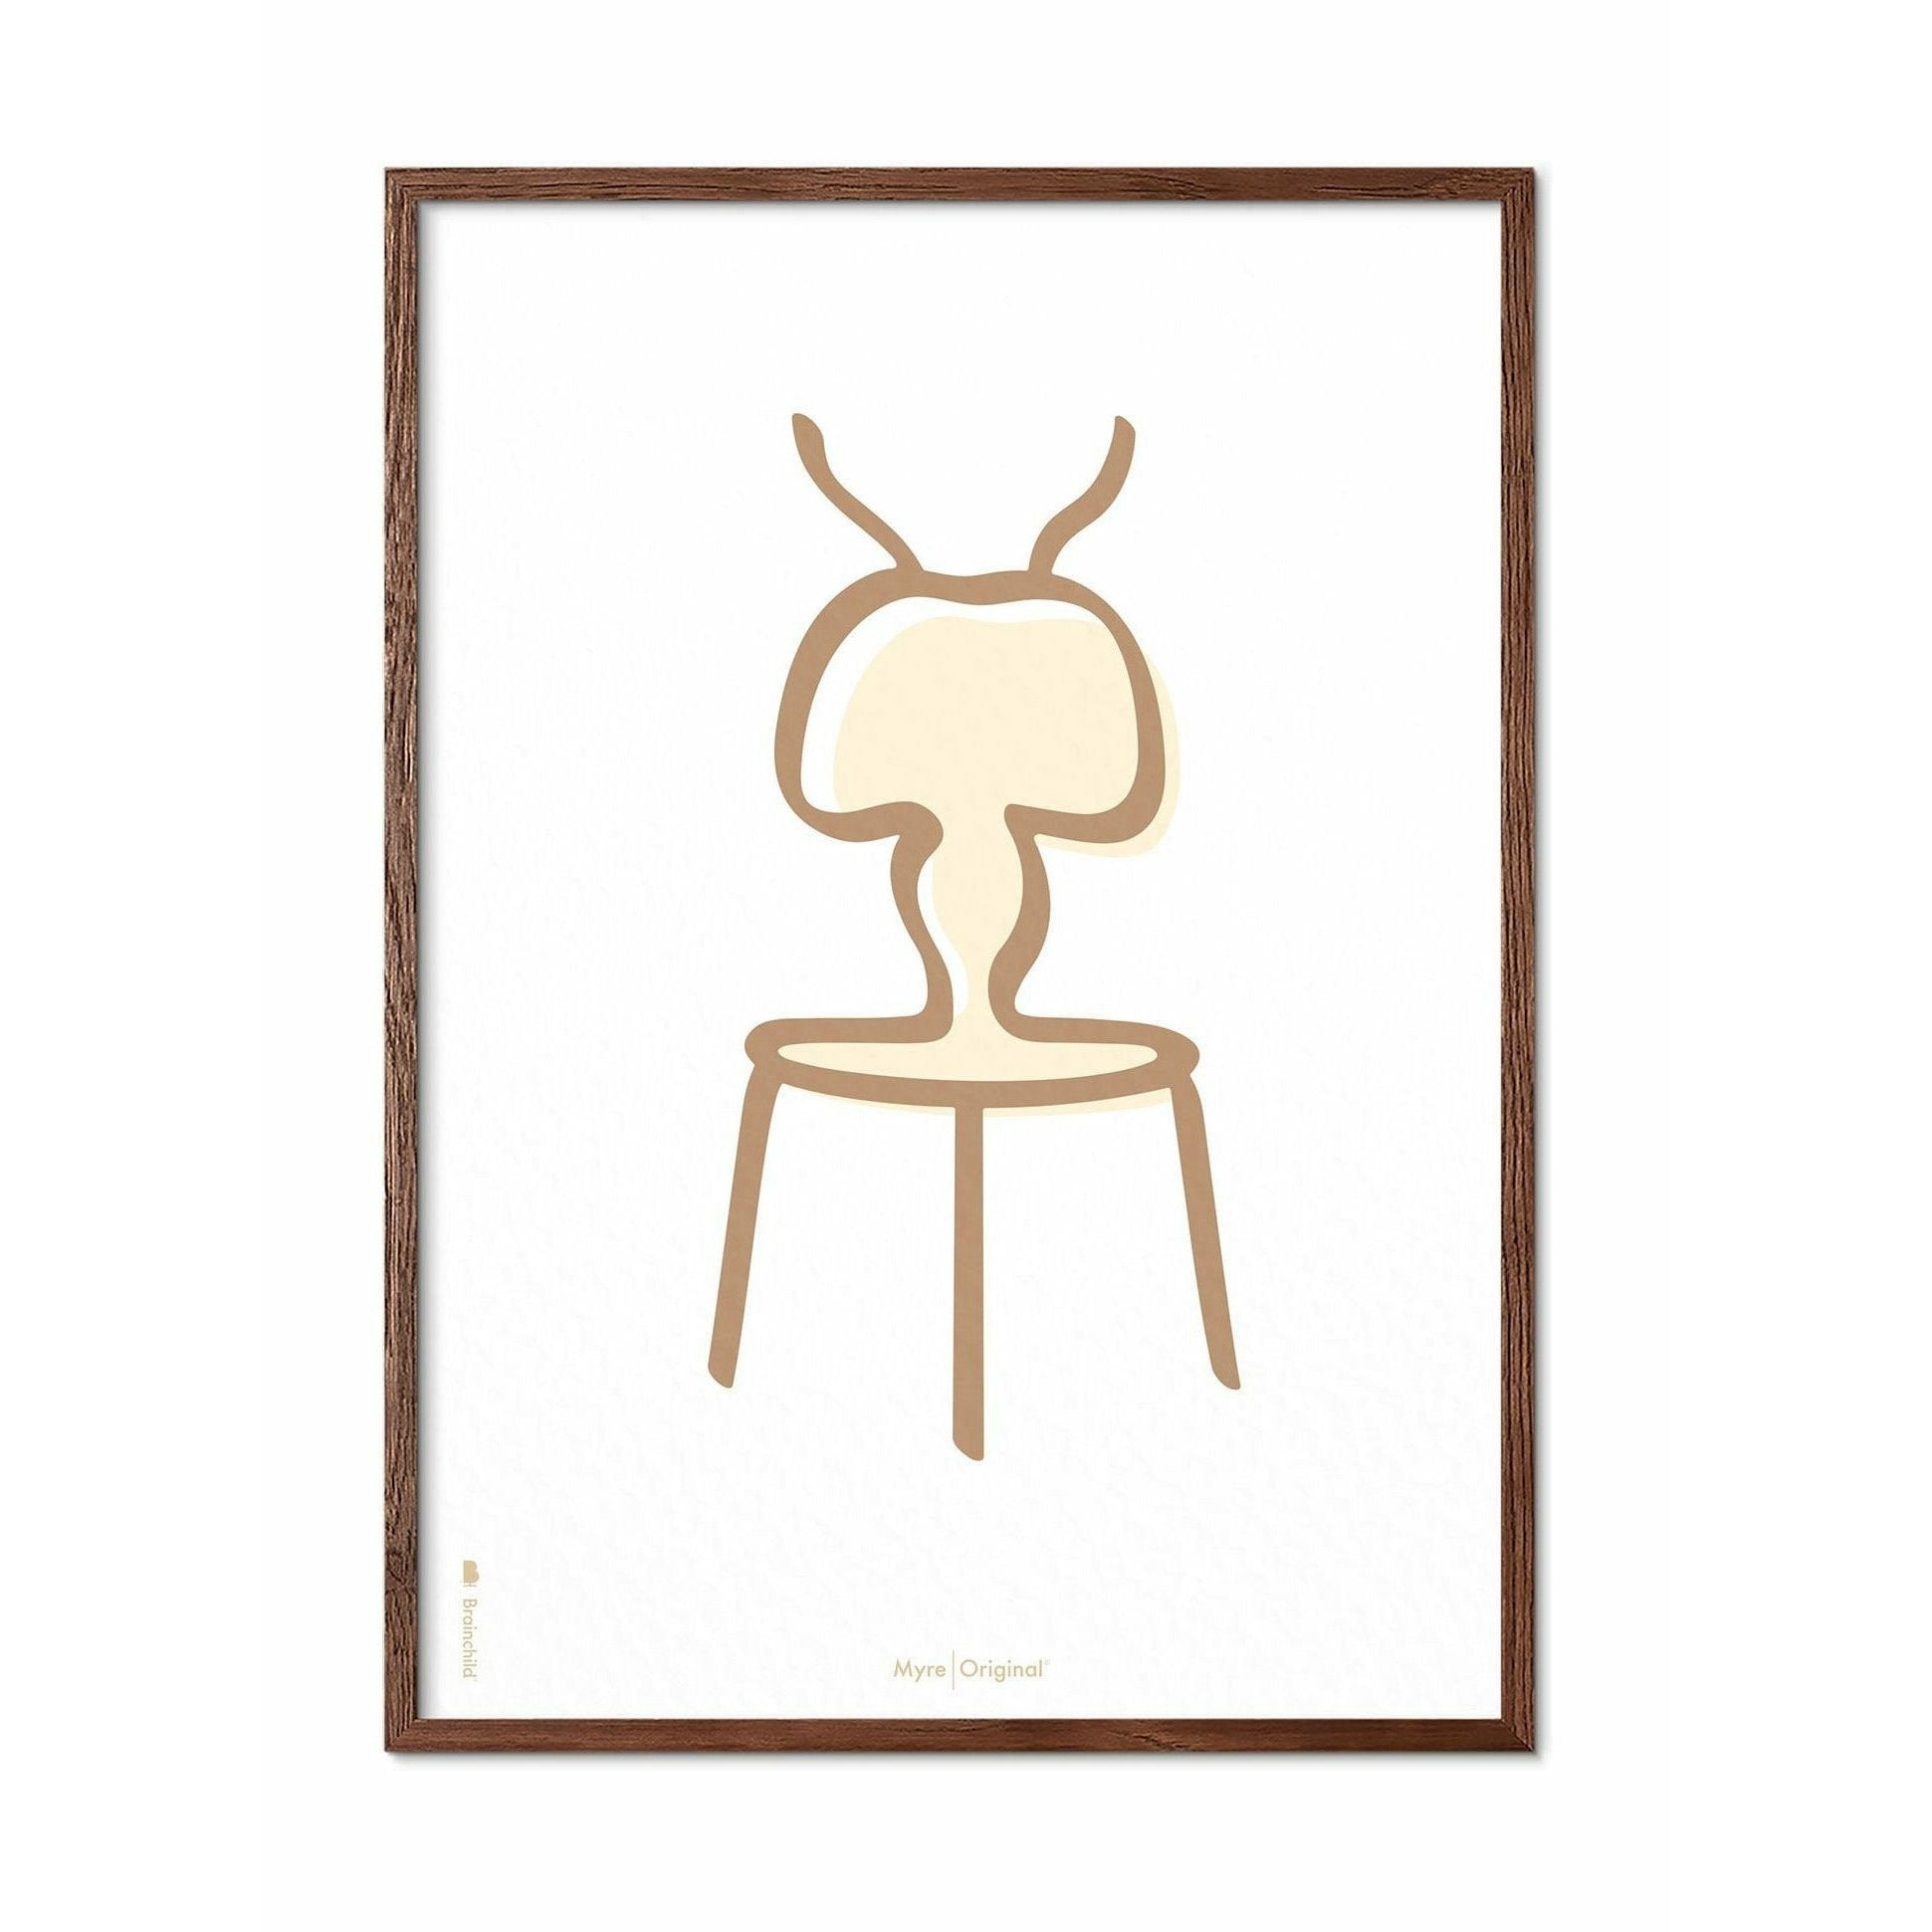 Póster de línea de hormigas de creación, marco de madera oscura A5, fondo blanco